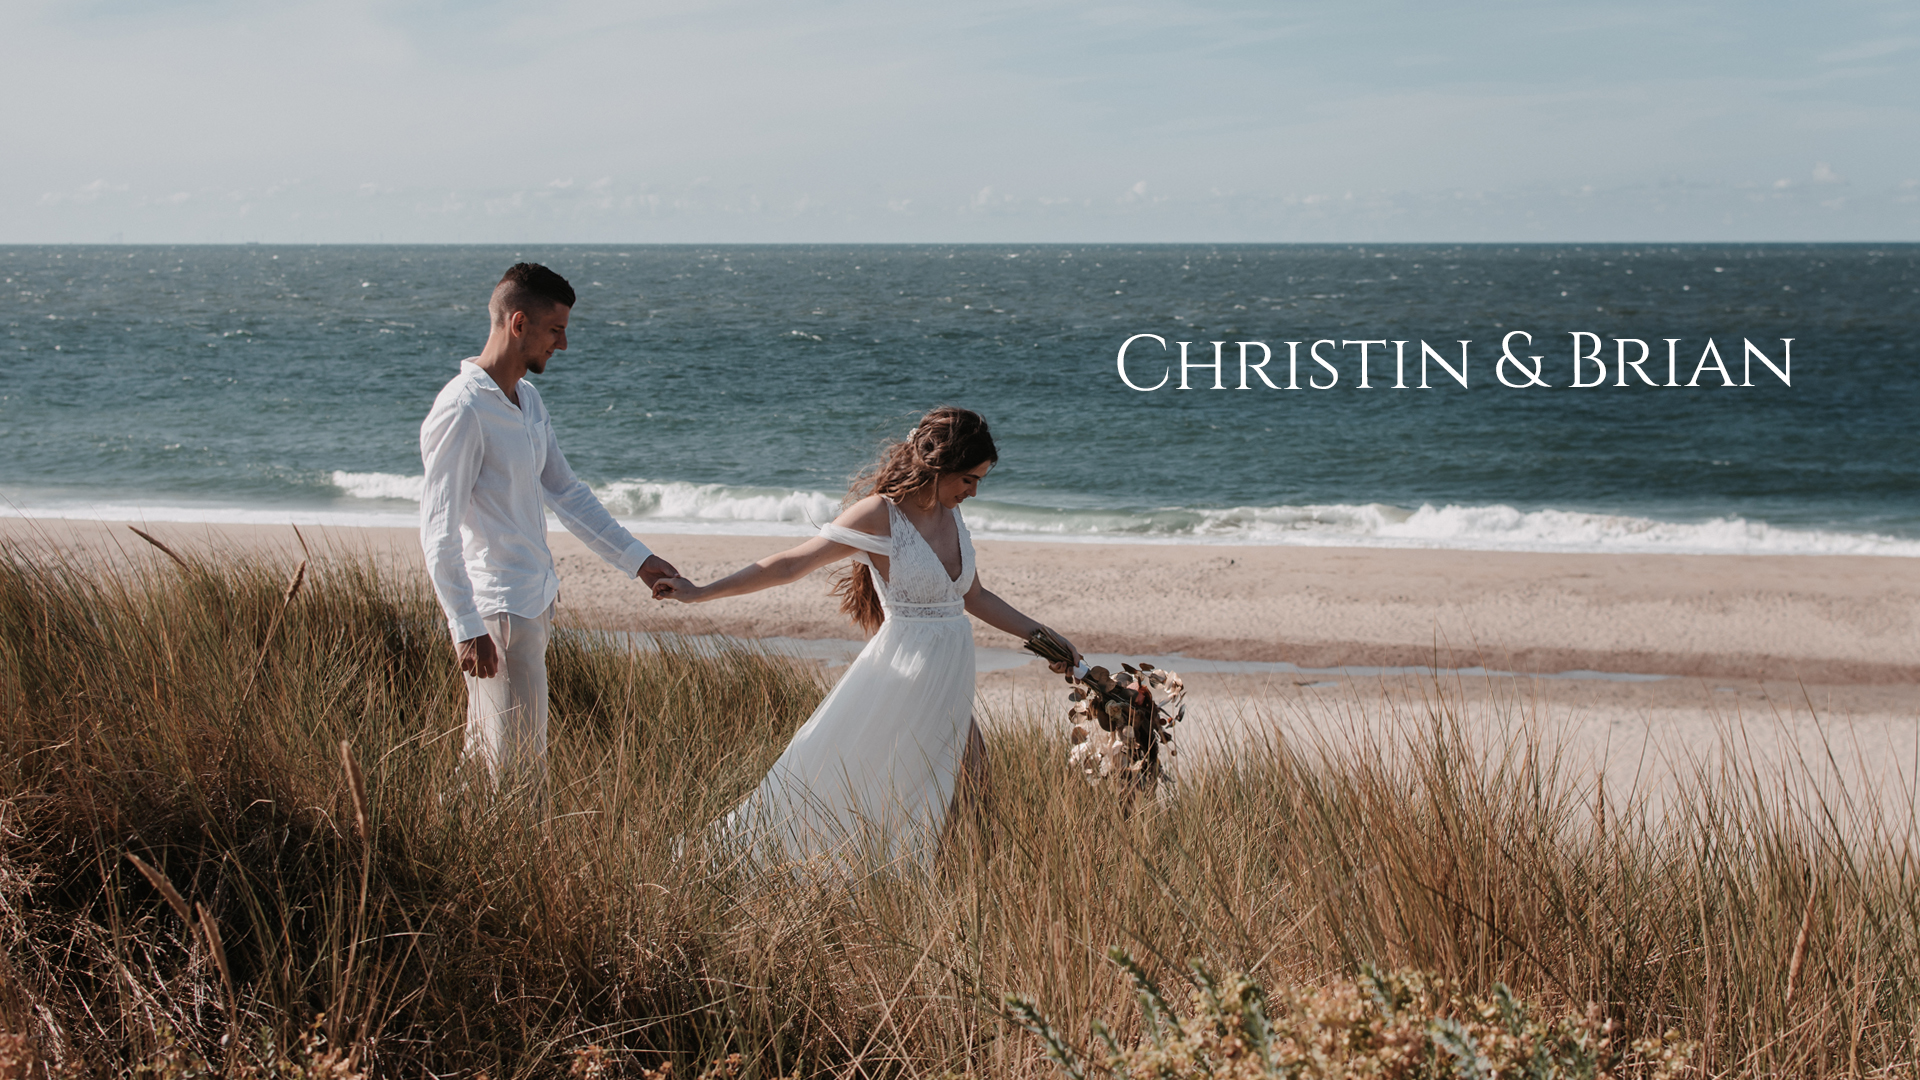 Strandhochzeit Christin & Brian, Hochzeitsinspiration in Domburg, Niederlande